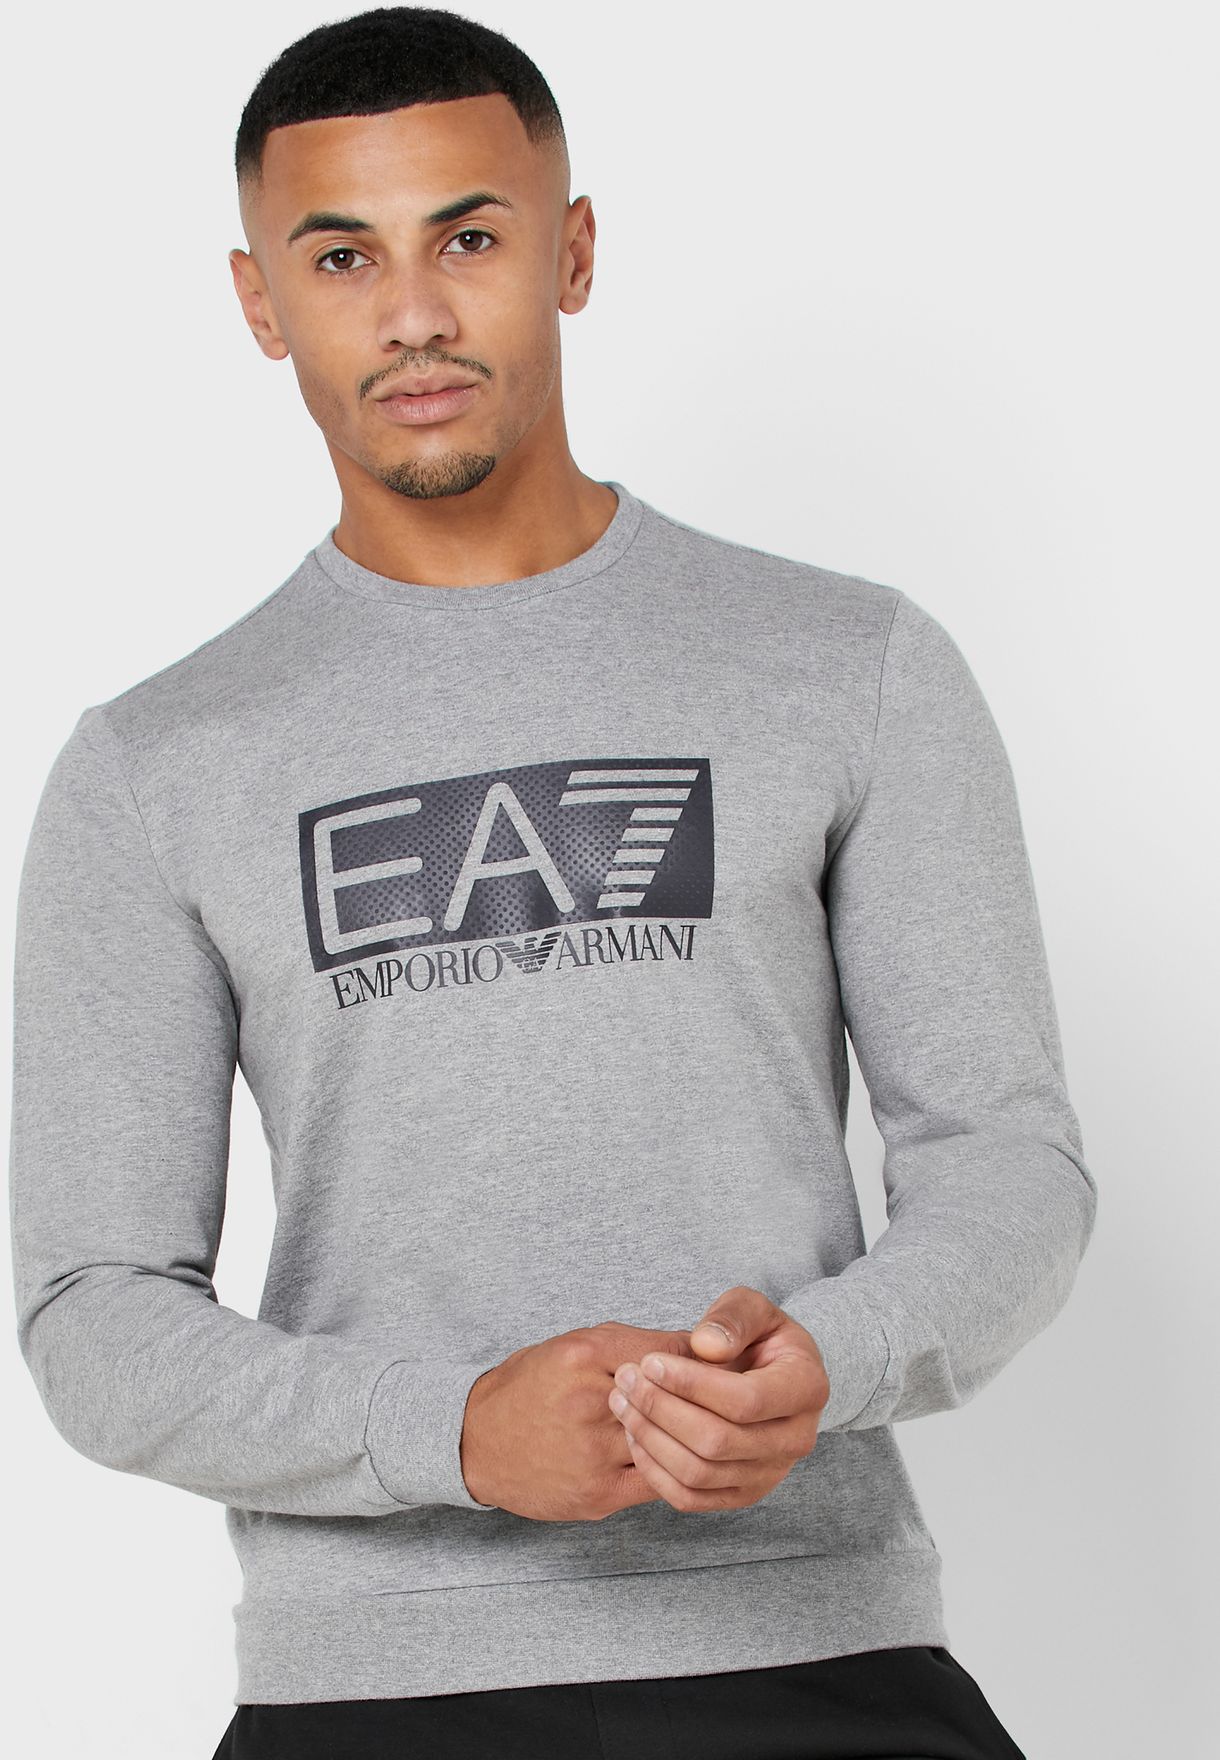 Buy Ea7 Emporio Armani Grey Essential 